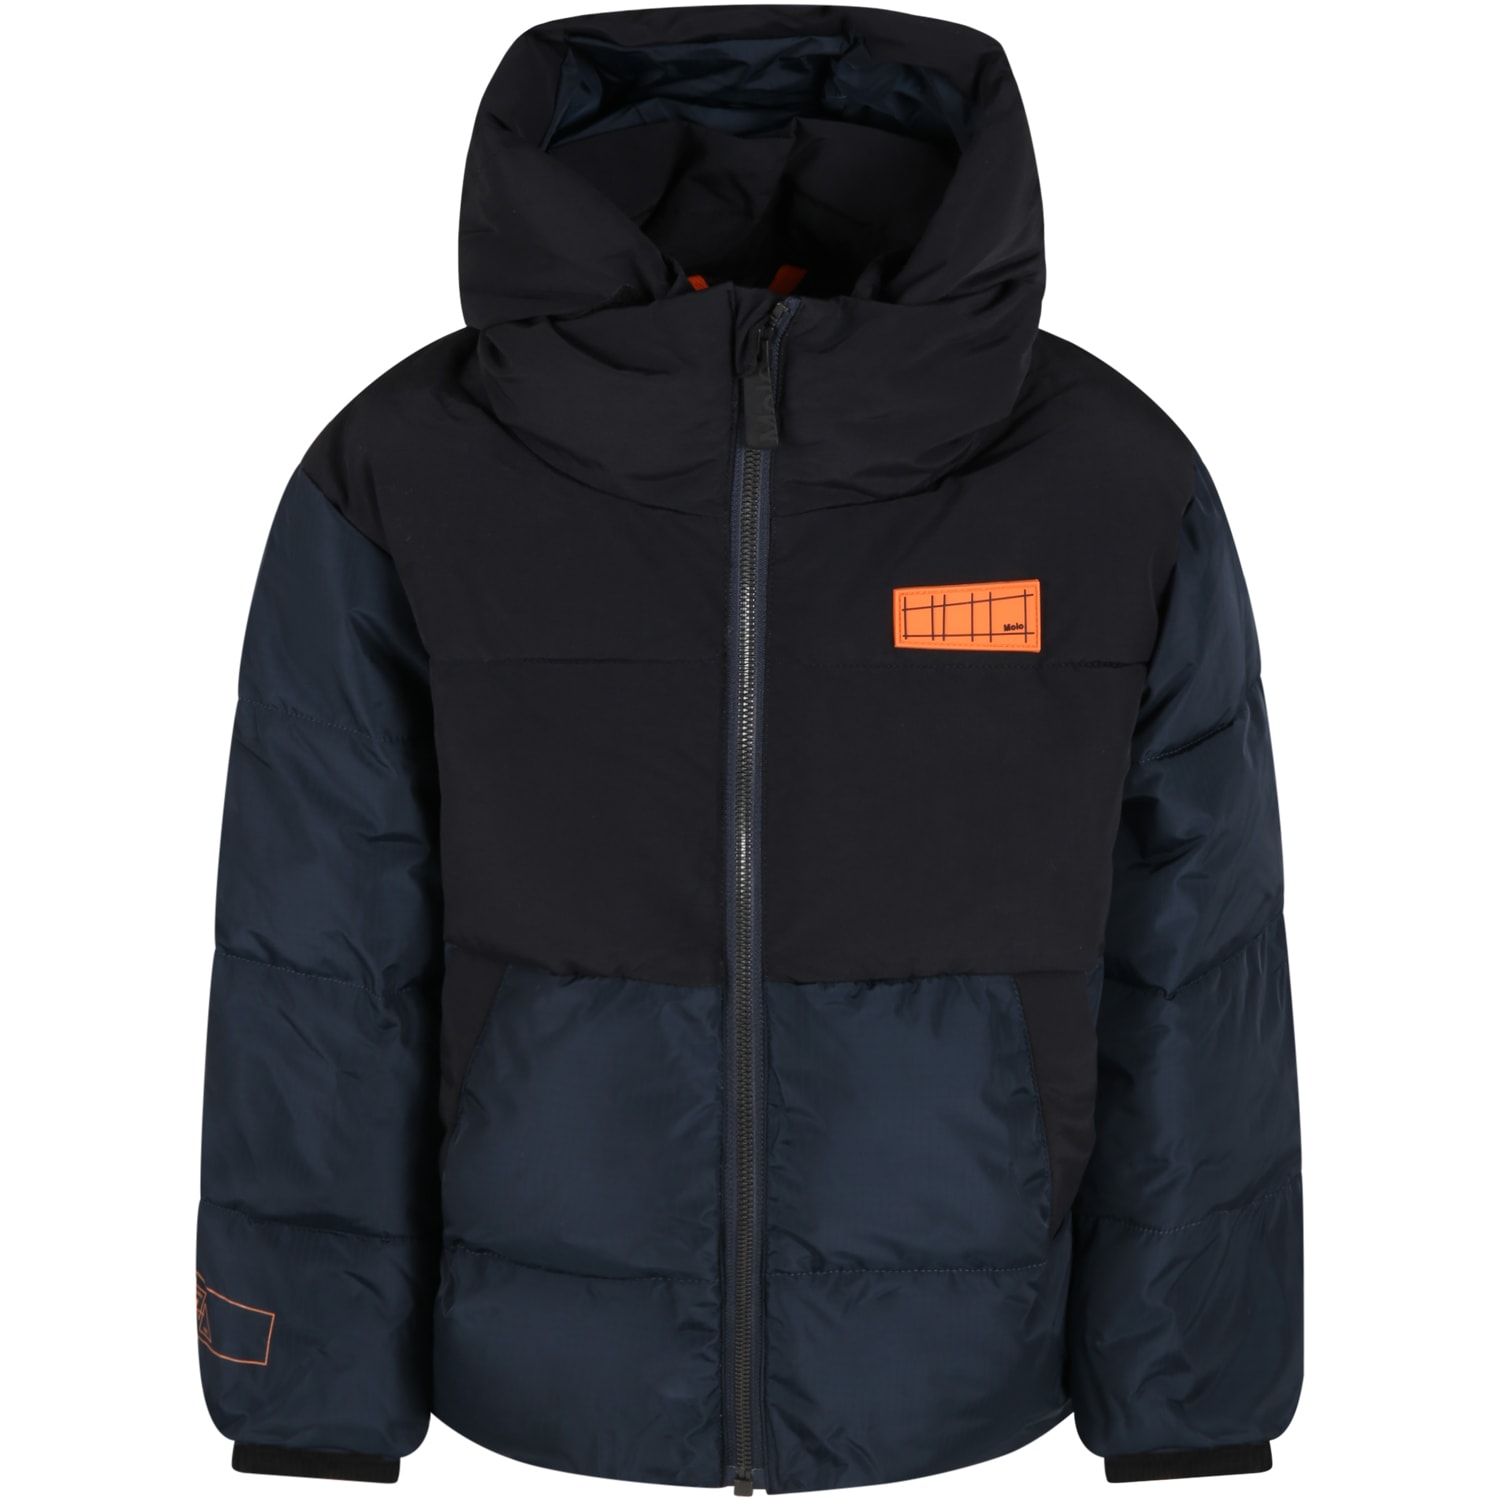 Molo Black Jacket For Boy With Orange Logo